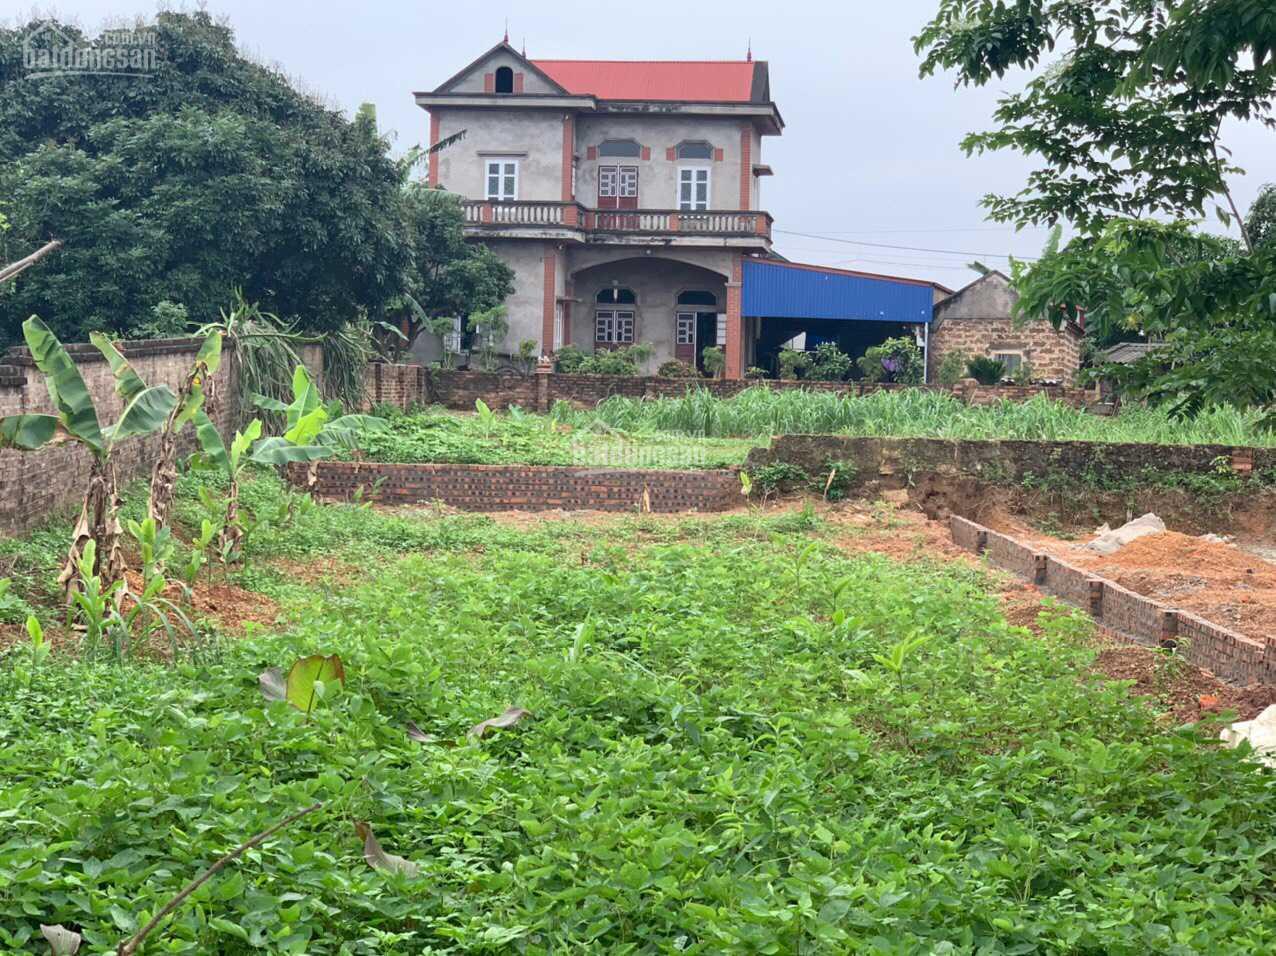 Bán nhà đất thổ cư Hà Nội bán 283 m2-1.250 m2 đất sổ đỏ tại Sóc Sơn!